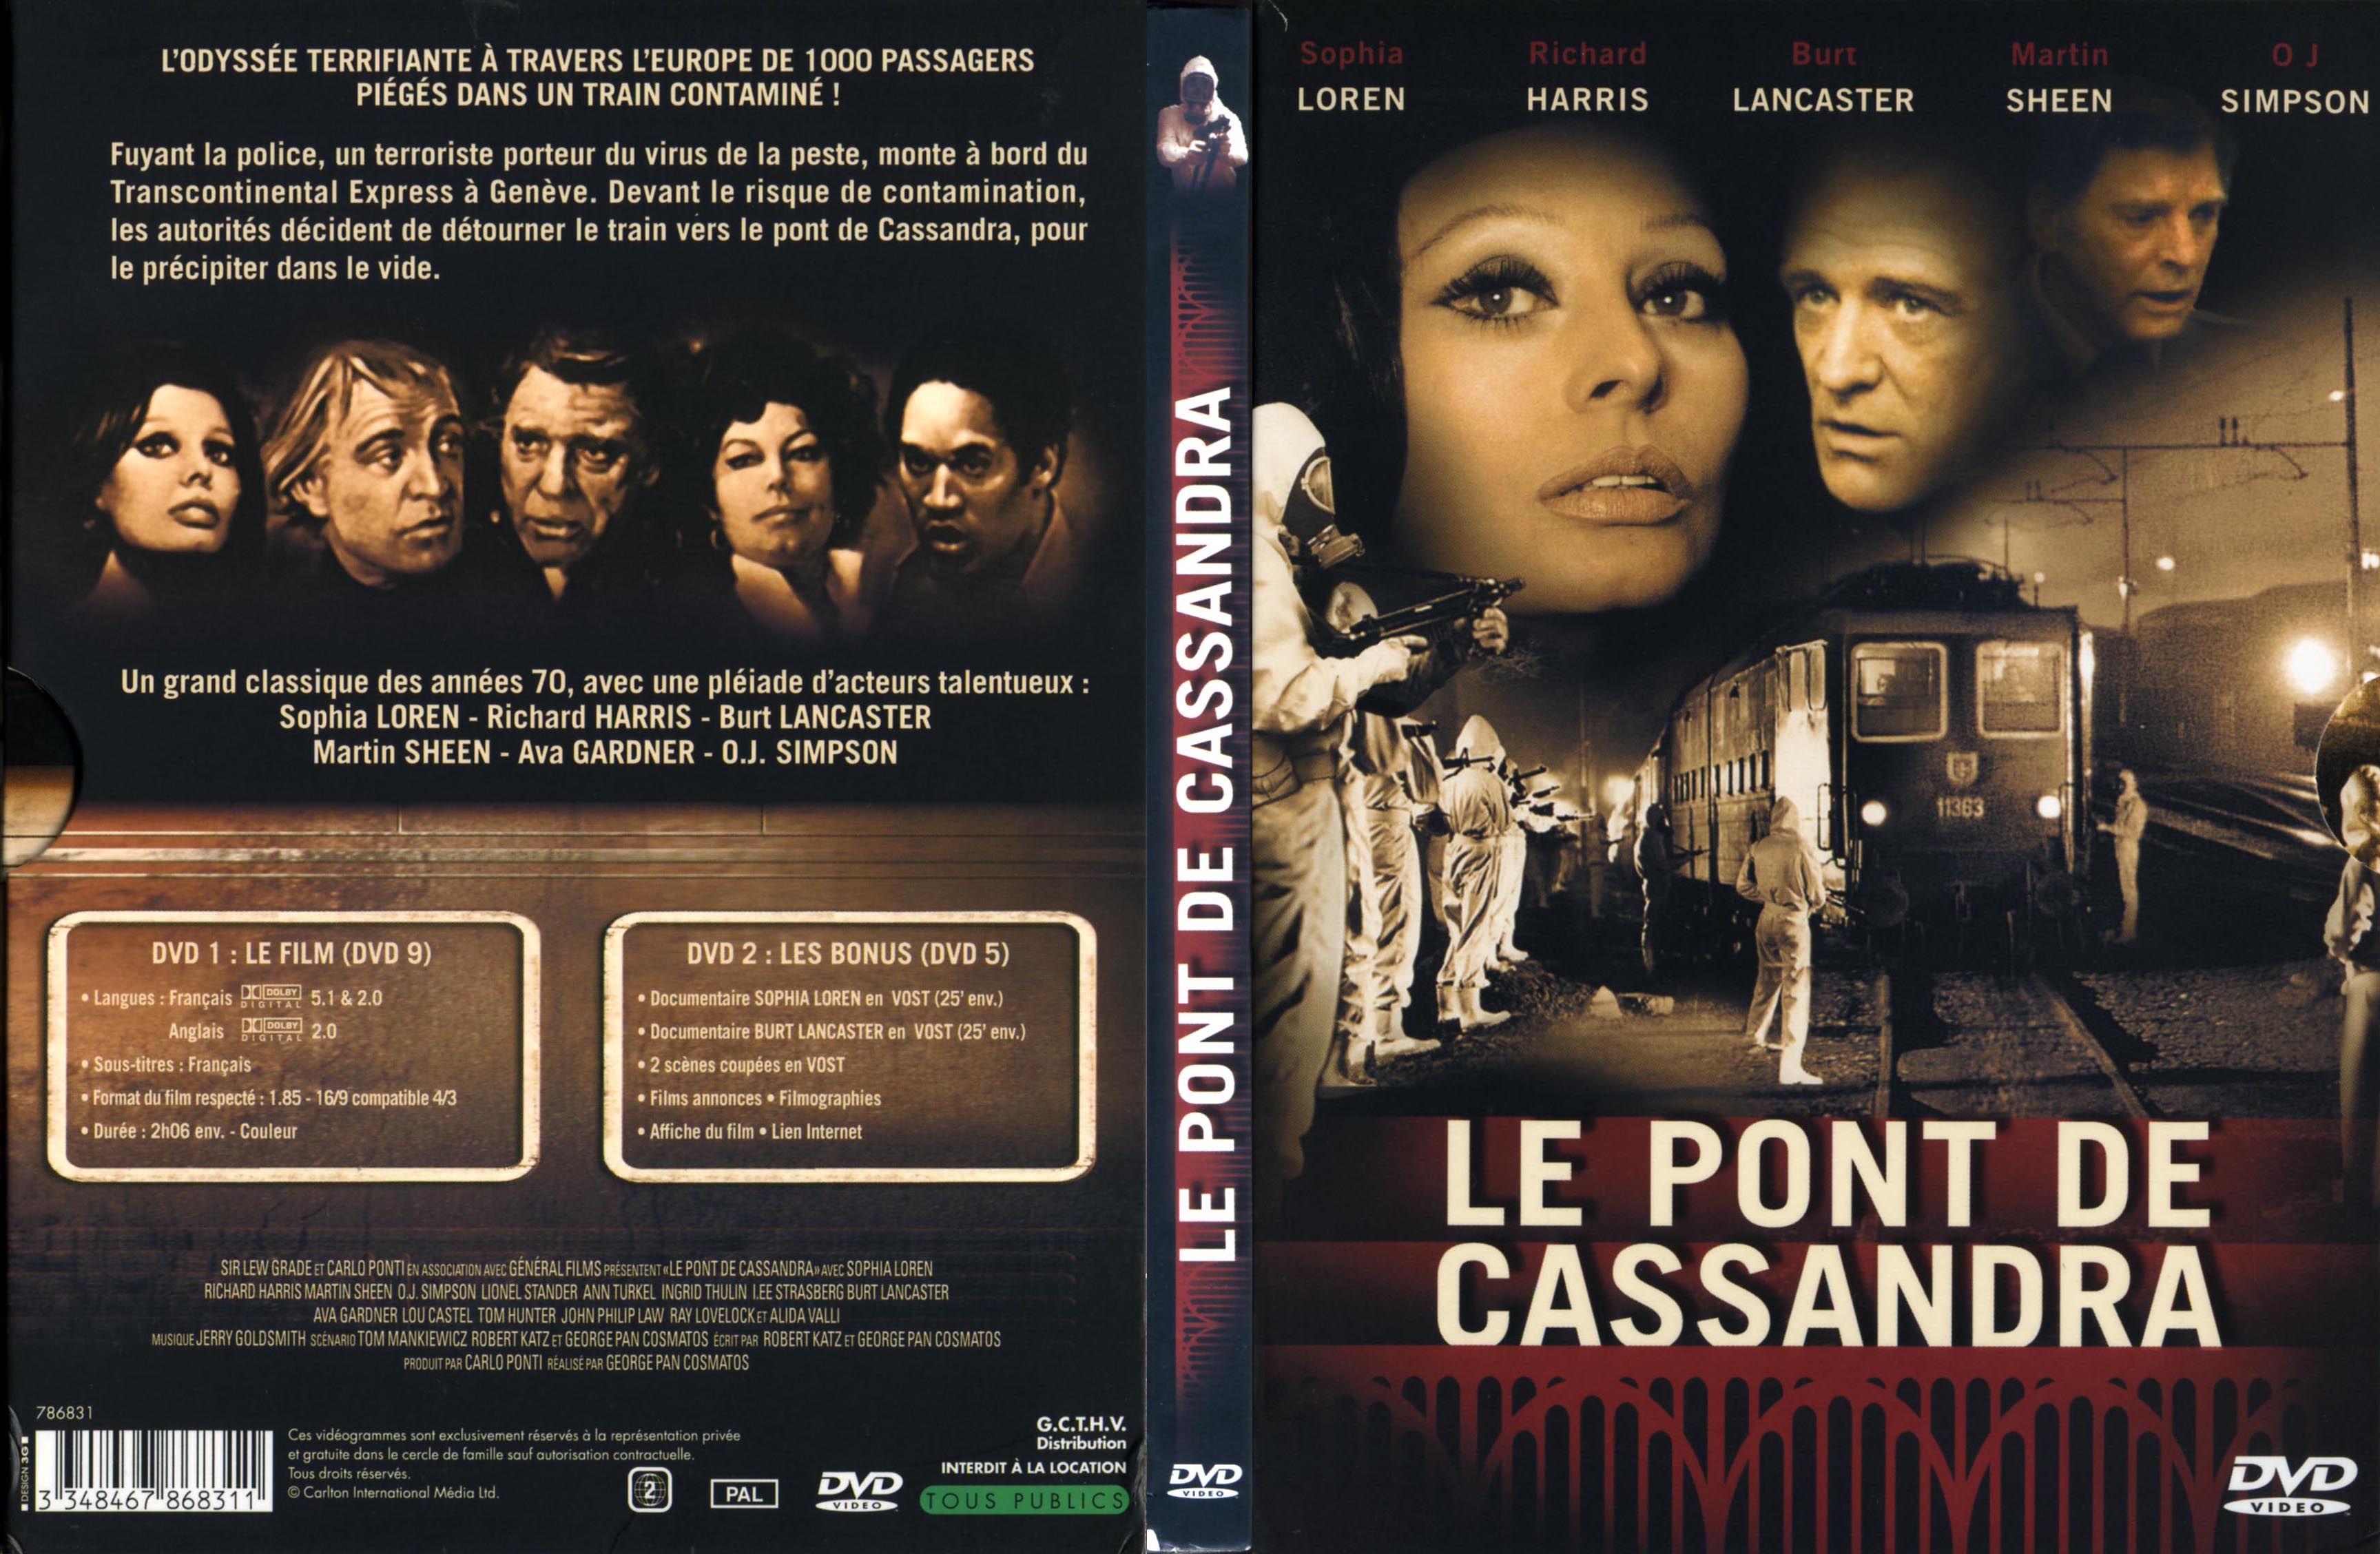 Jaquette DVD Le Pont de Cassandra v3